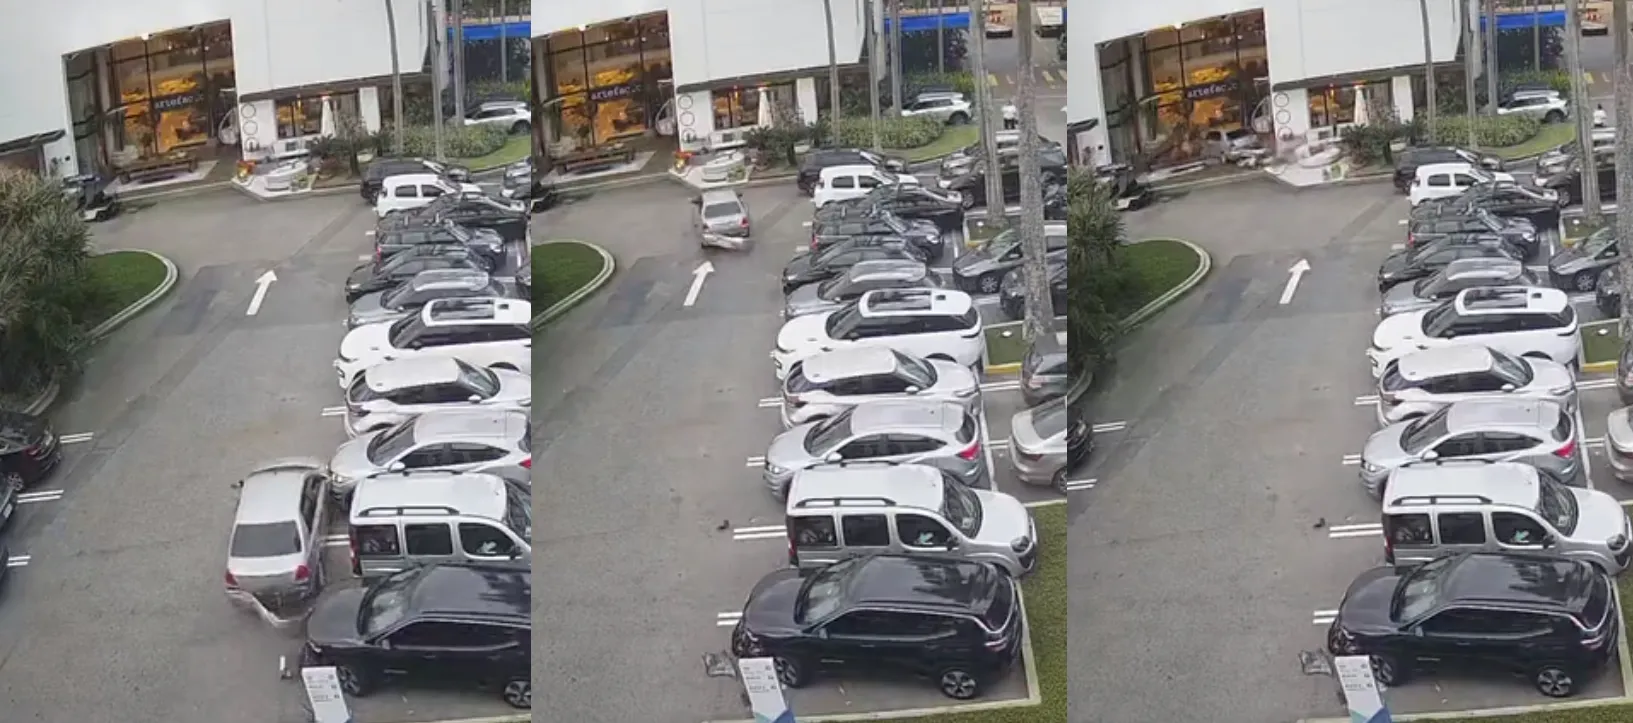 Veículo bateu em outros carros no estacionamento antes de atingir a loja